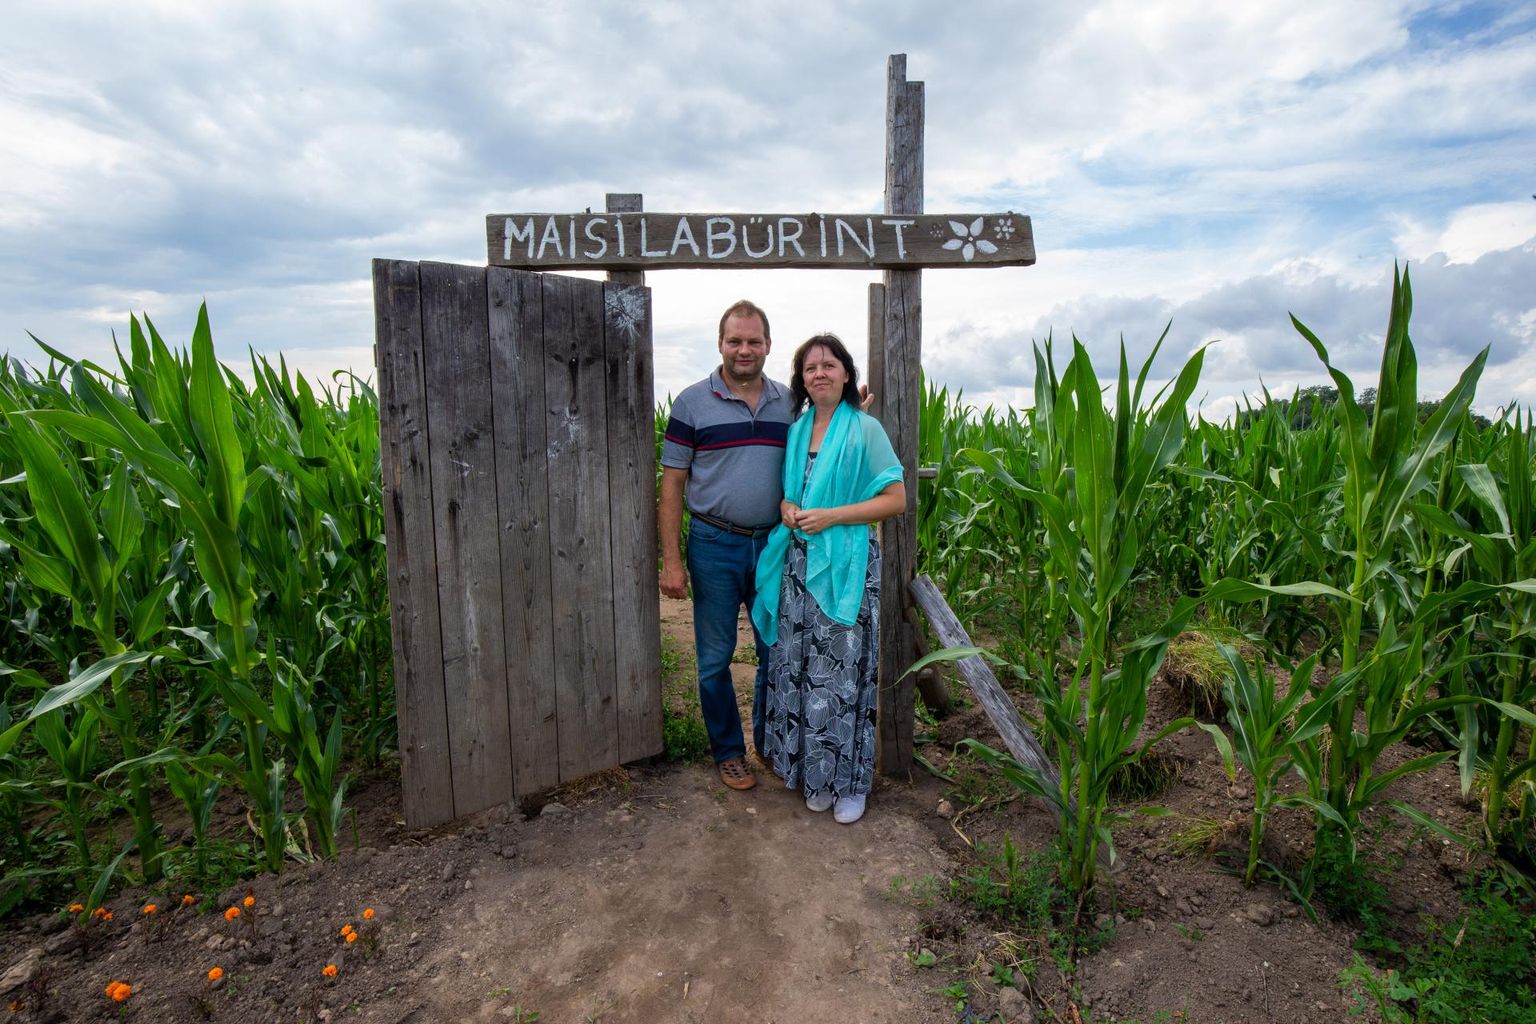 Maisipõllule seiklema: Kaspar ja Kristi Sakk ootavad juba üheksandat suve oma põllule külalisi, kes suudaks maisilabürindis õige tee üles leida.